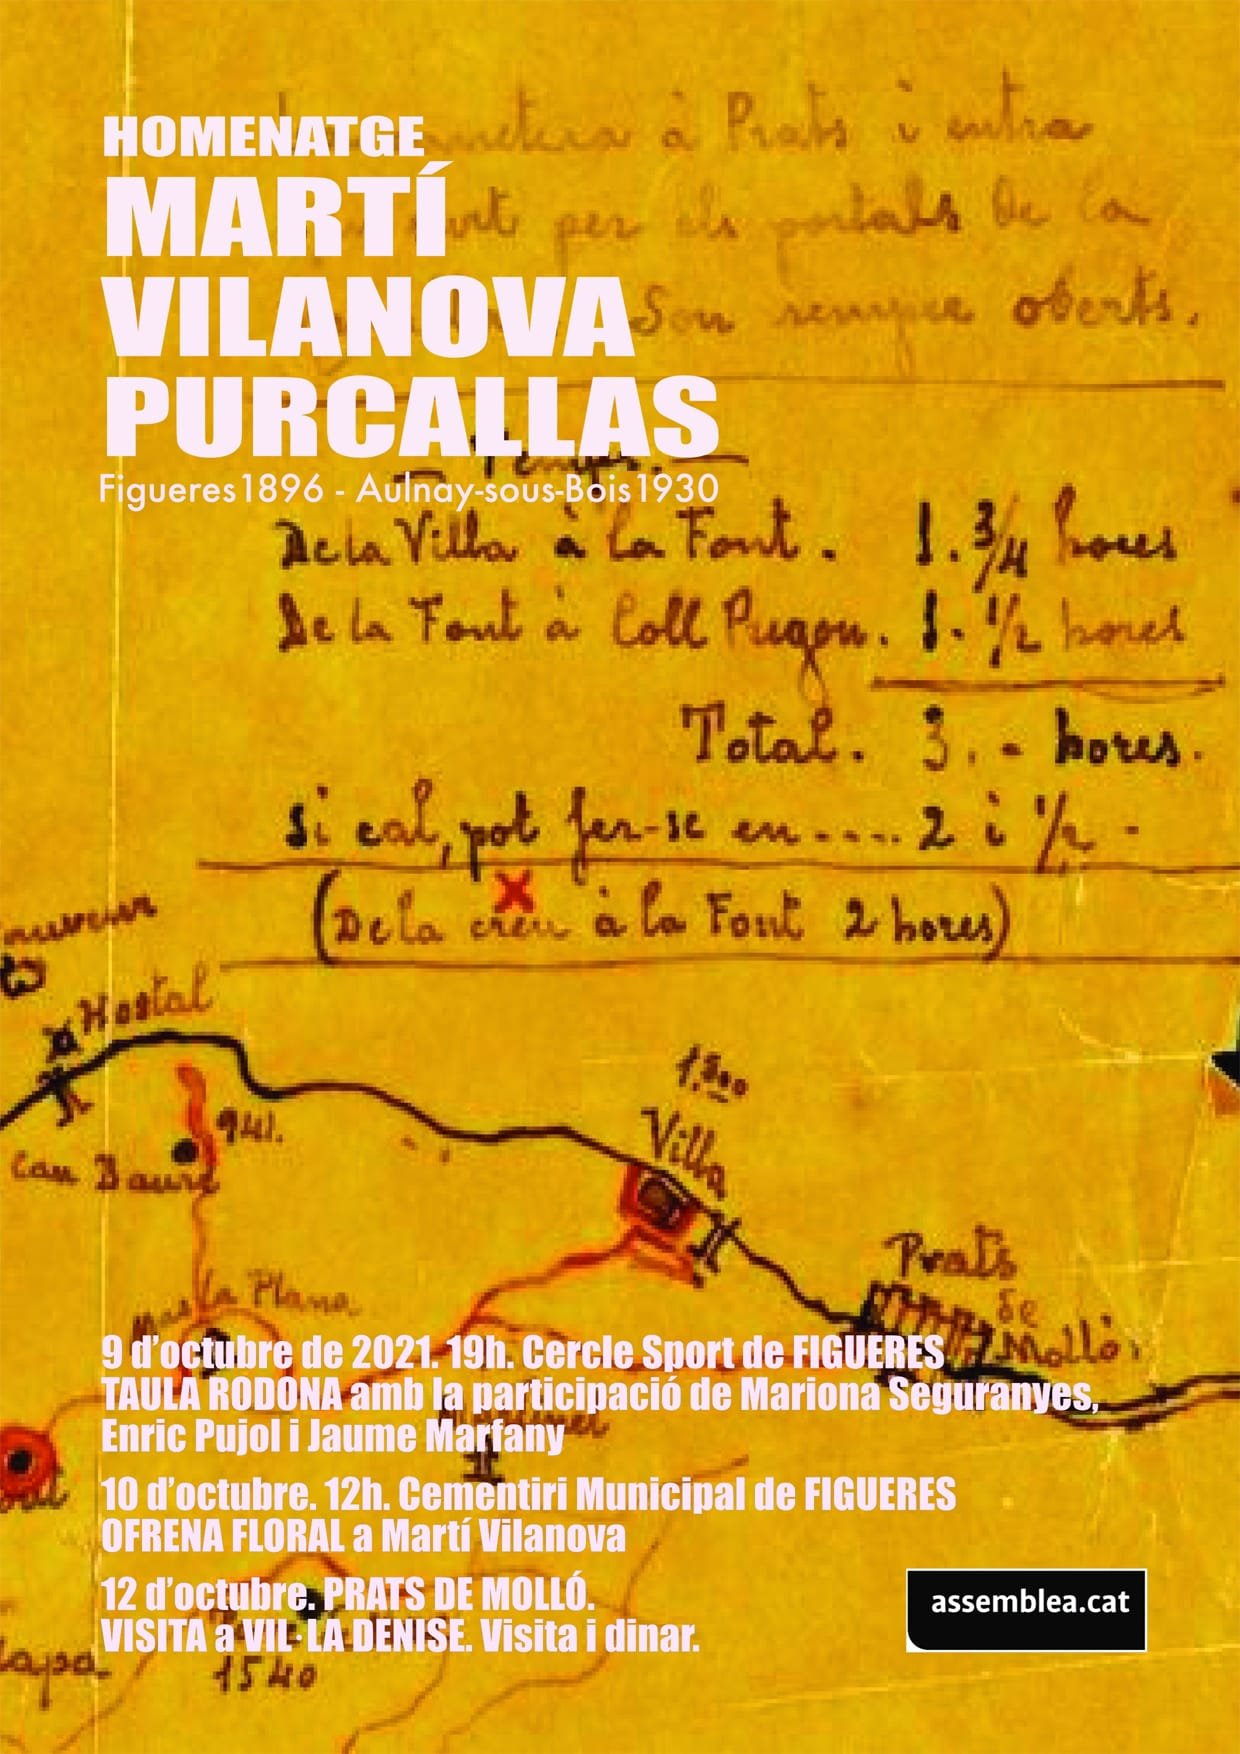 Homenatge a Martí Vilanova Purcallas